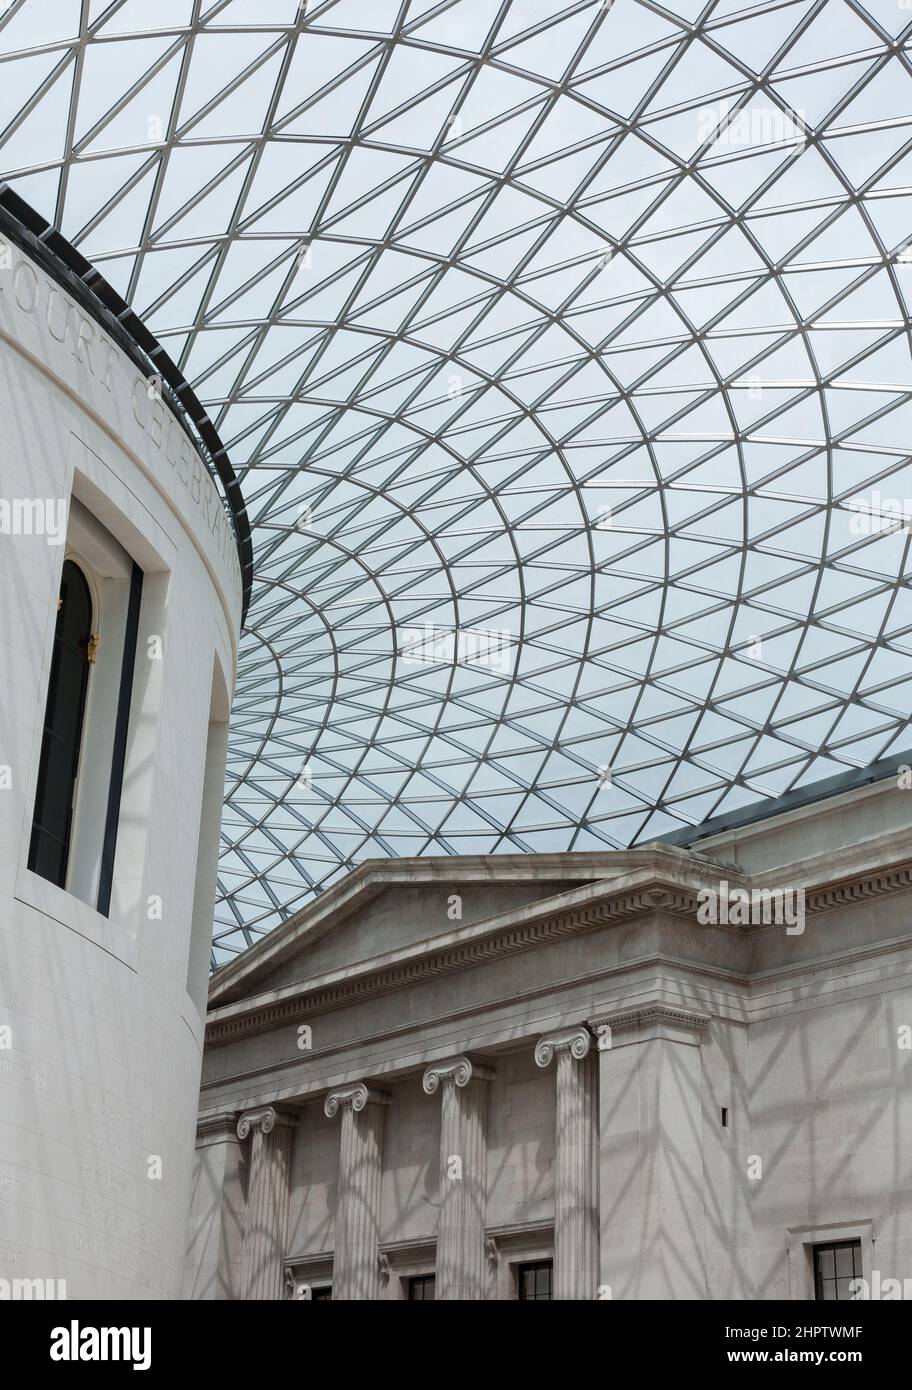 Soffitto della Grande Corte del British Museum: La Grande Corte del British Museum ora uno spazio interno luminoso grazie a una massiccia cupola parziale che racchiude lo spazio. Foto Stock